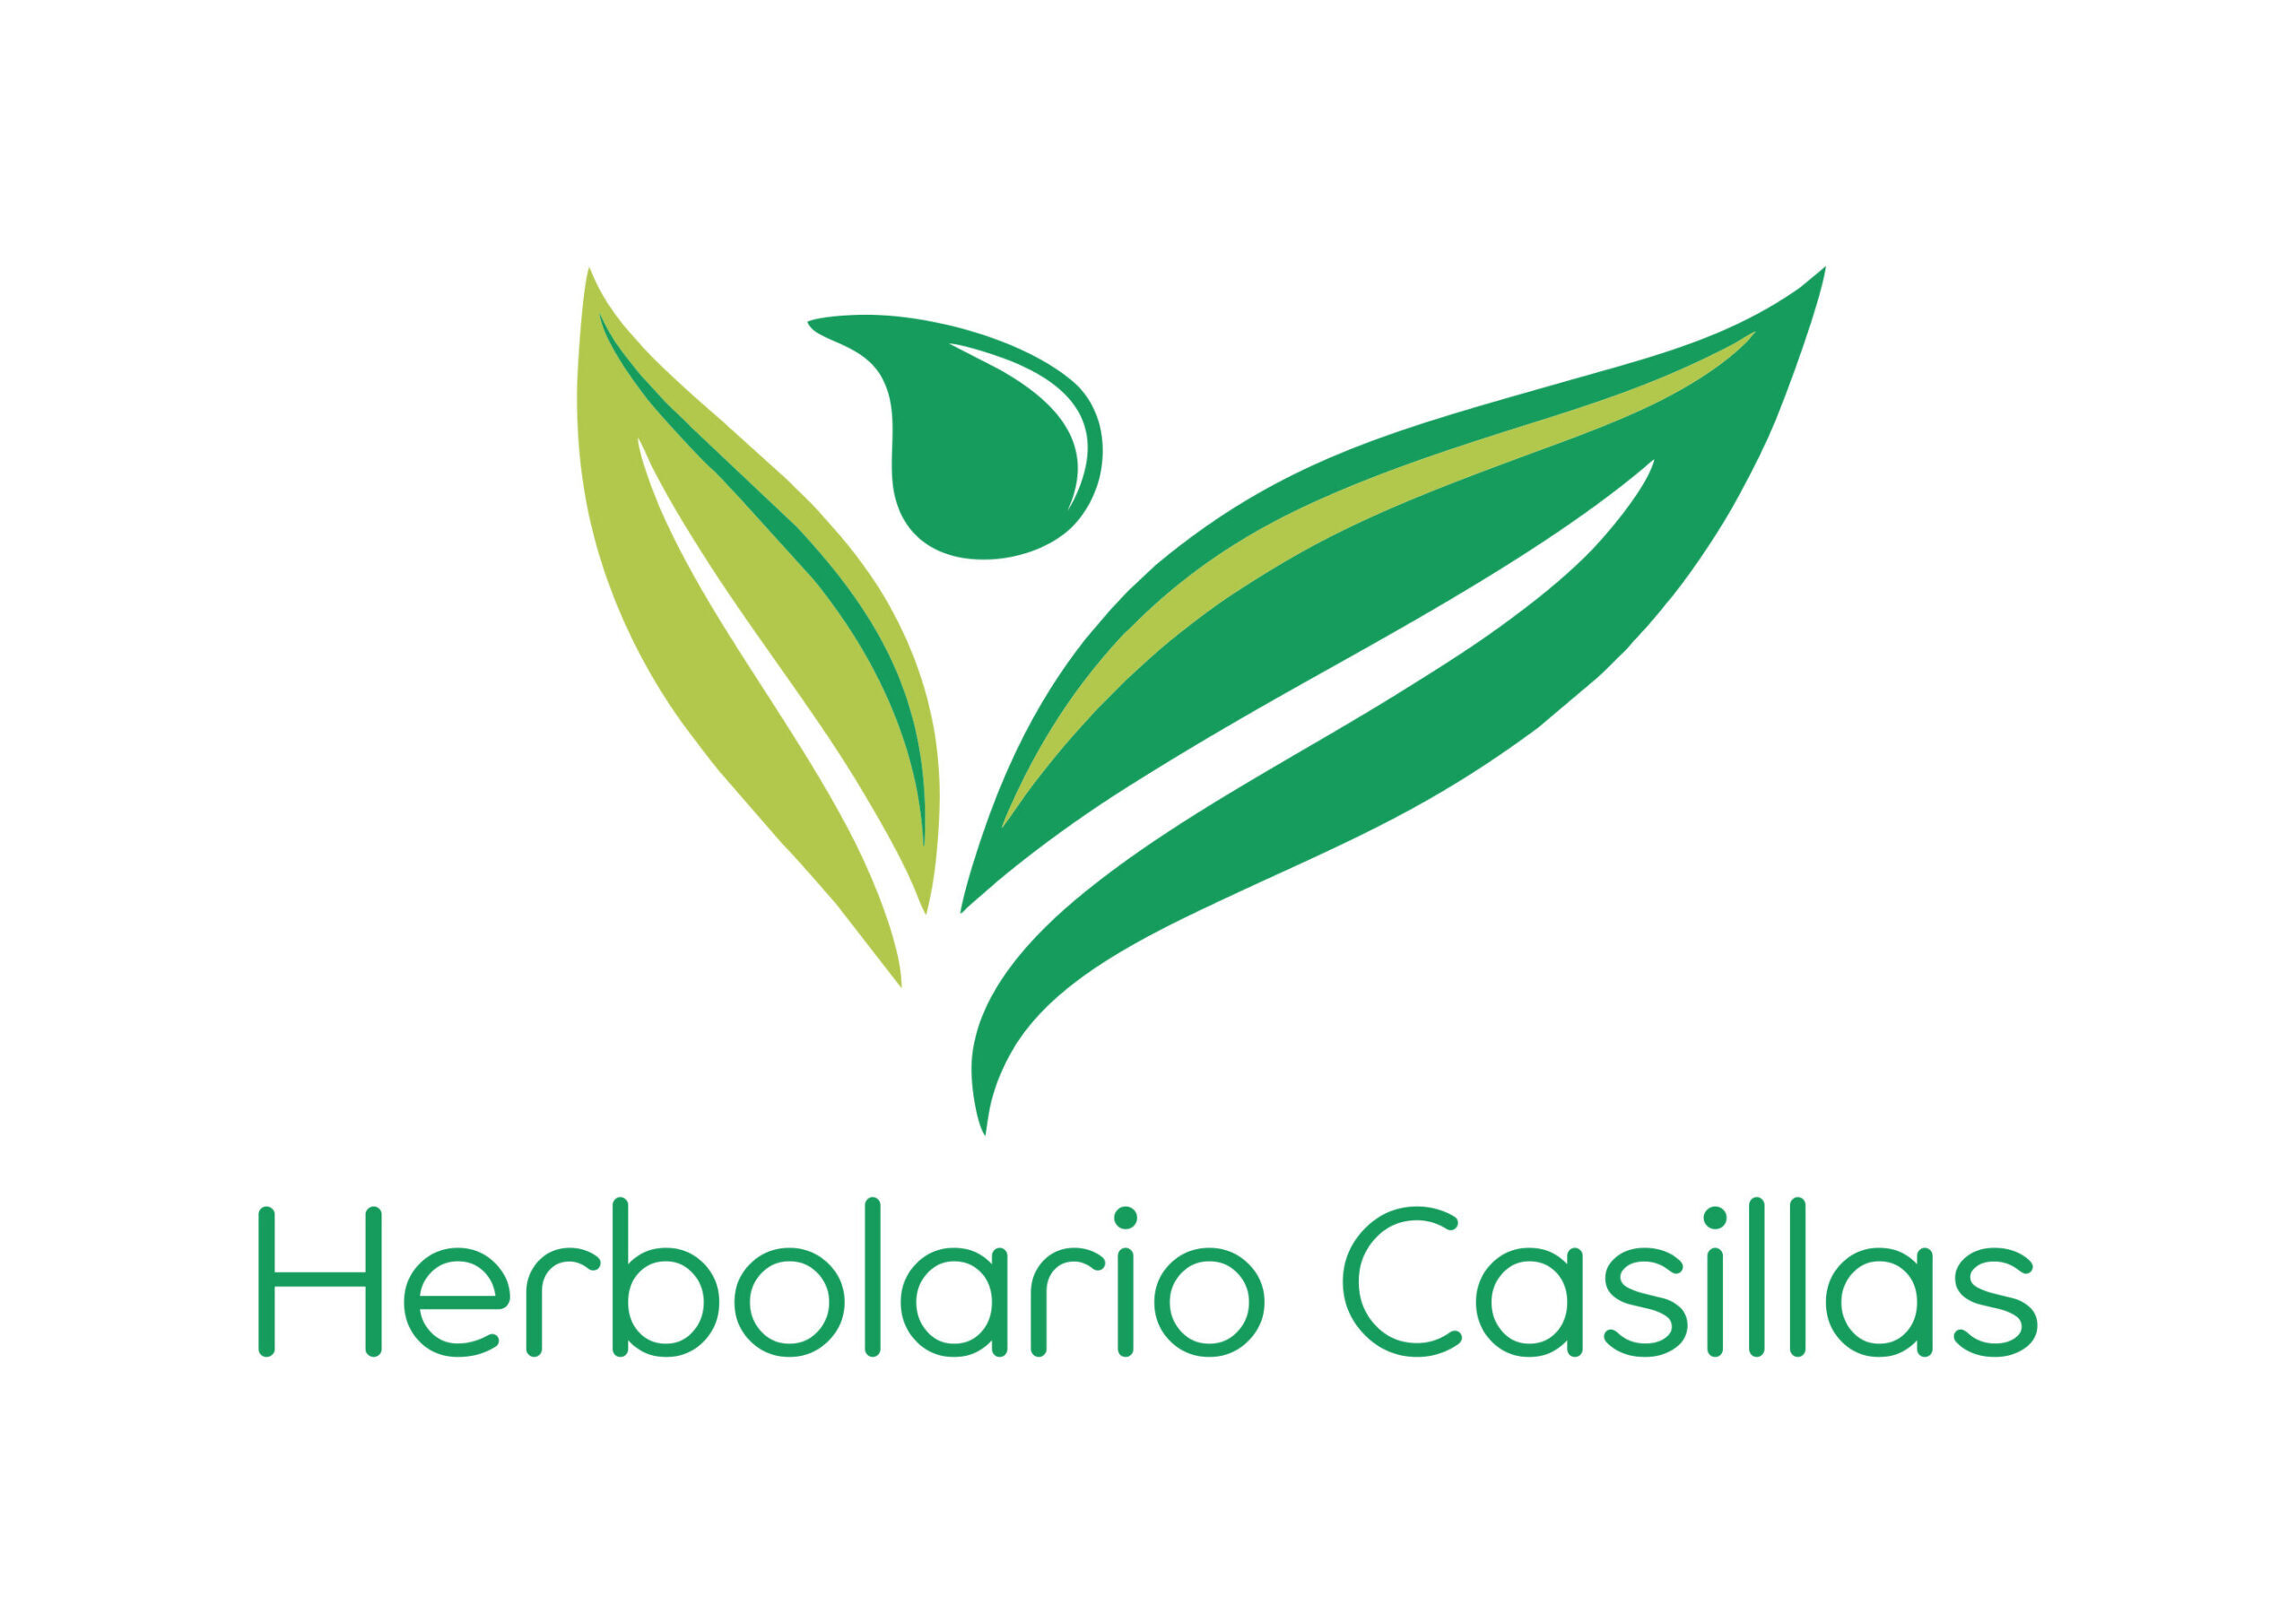 Herbolario Casillas